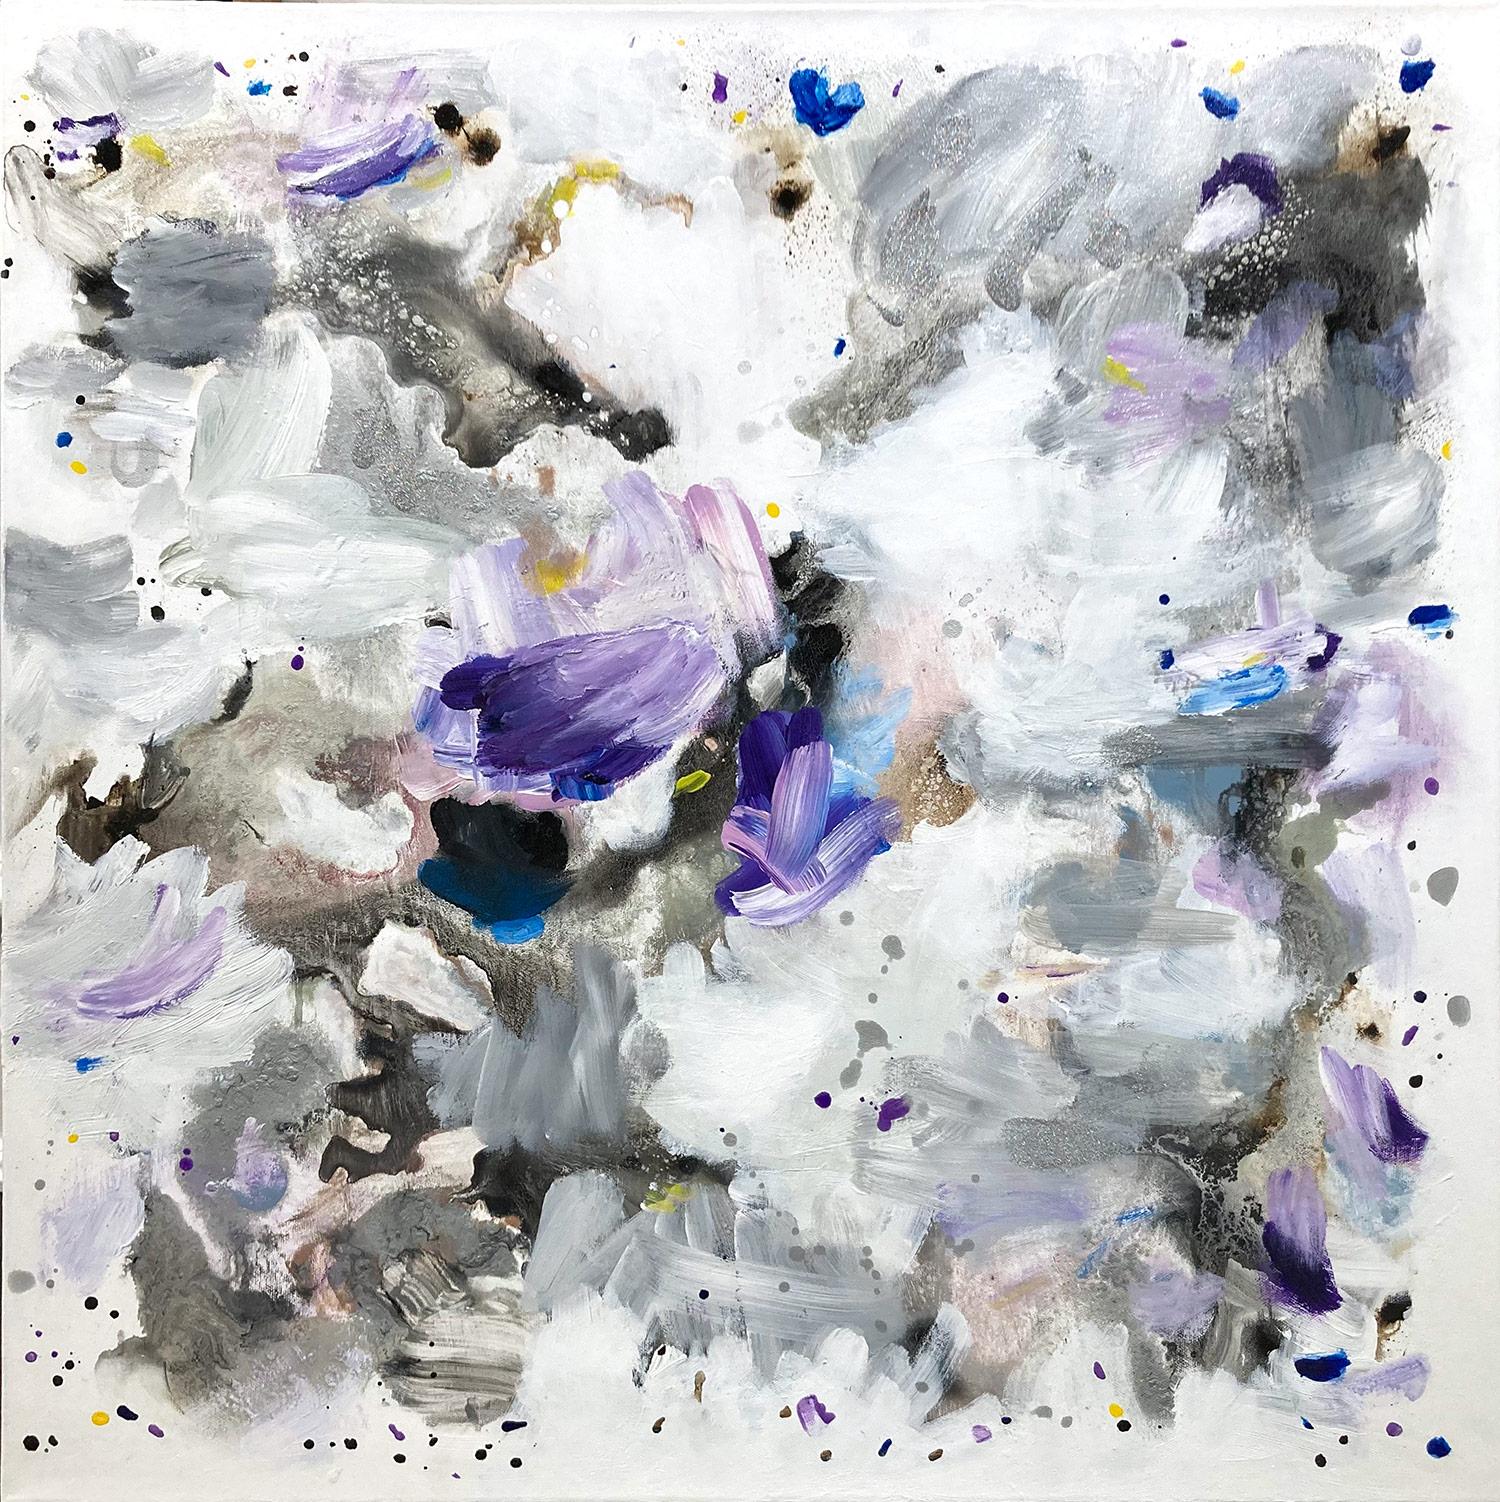 « Superluminal #58 » Peinture contemporaine fluide en techniques mixtes sur toile (Diptyque) - Contemporain Painting par Corinne Natel